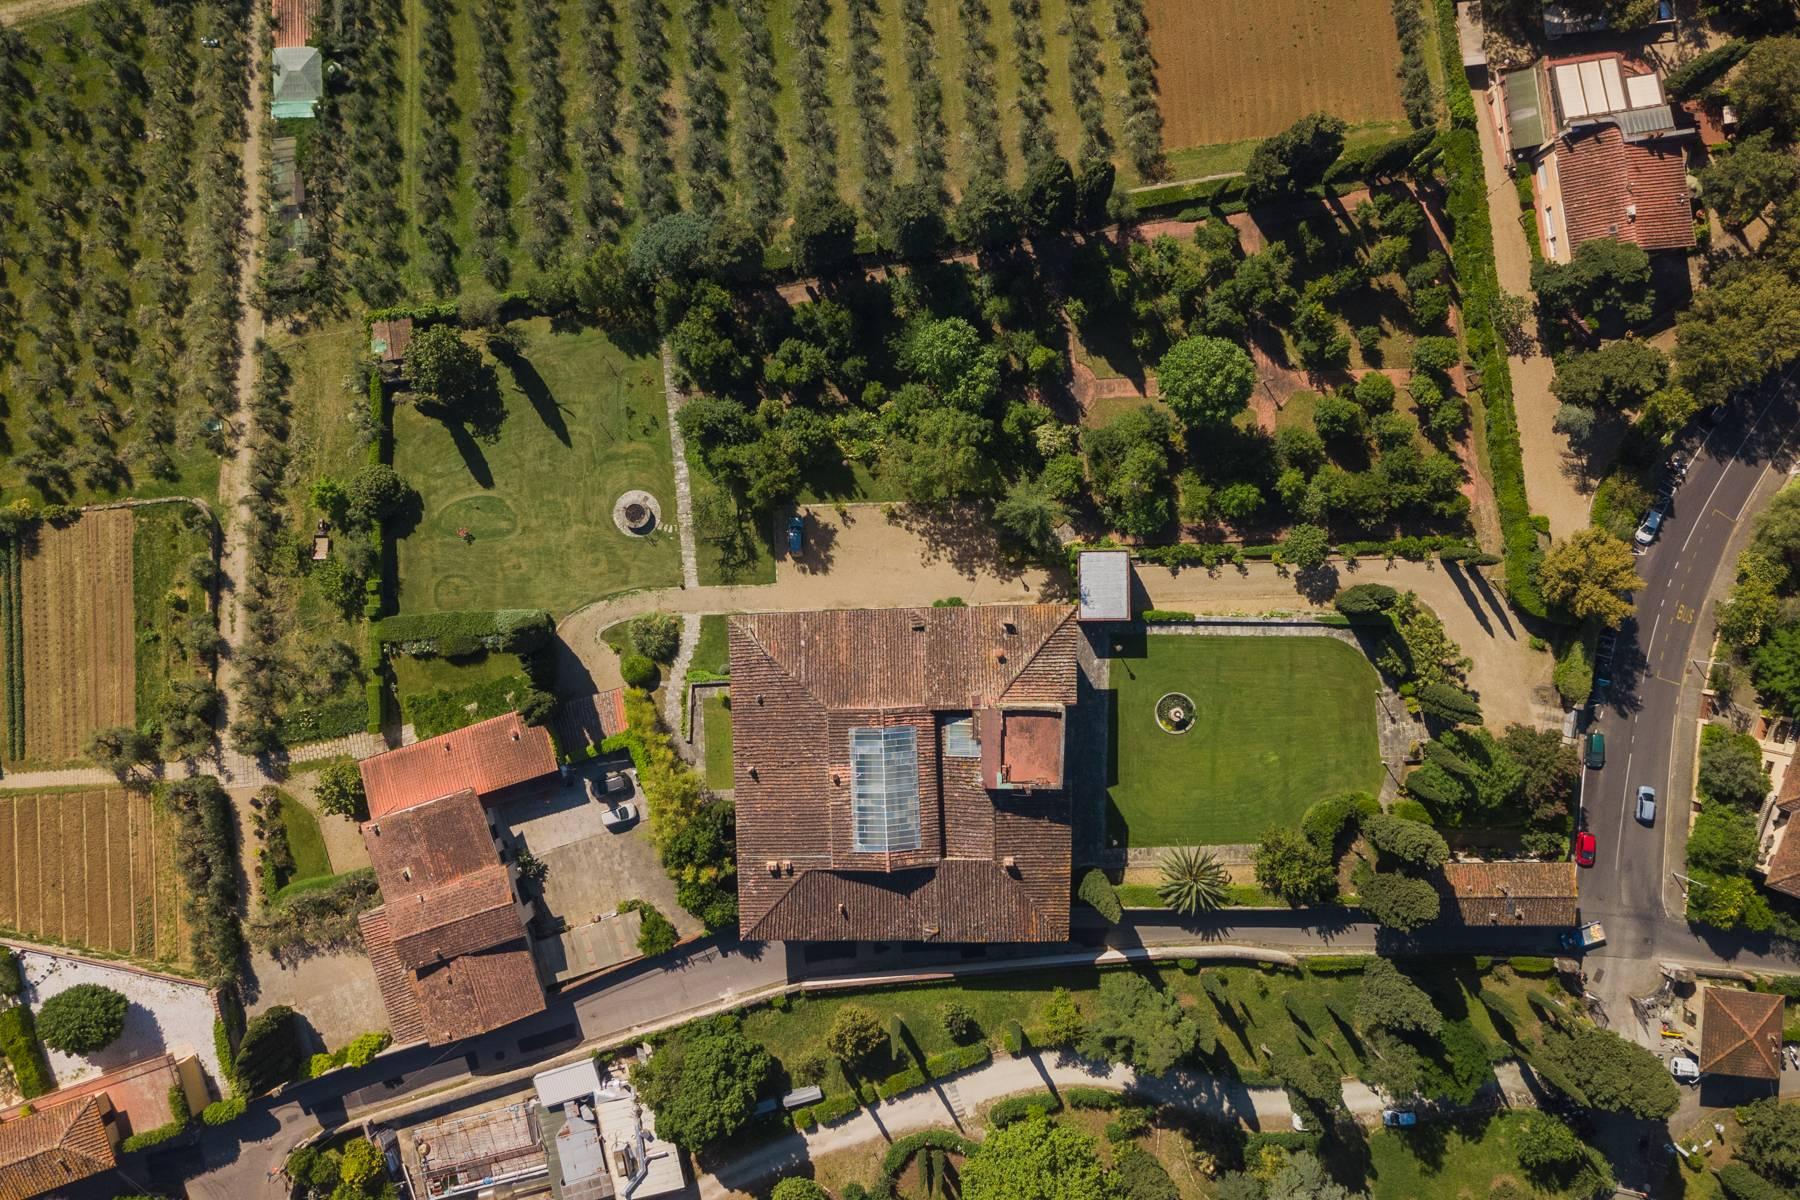 Elégante villa du XIVème siècle dans un parc de un hectare à Florence - 35